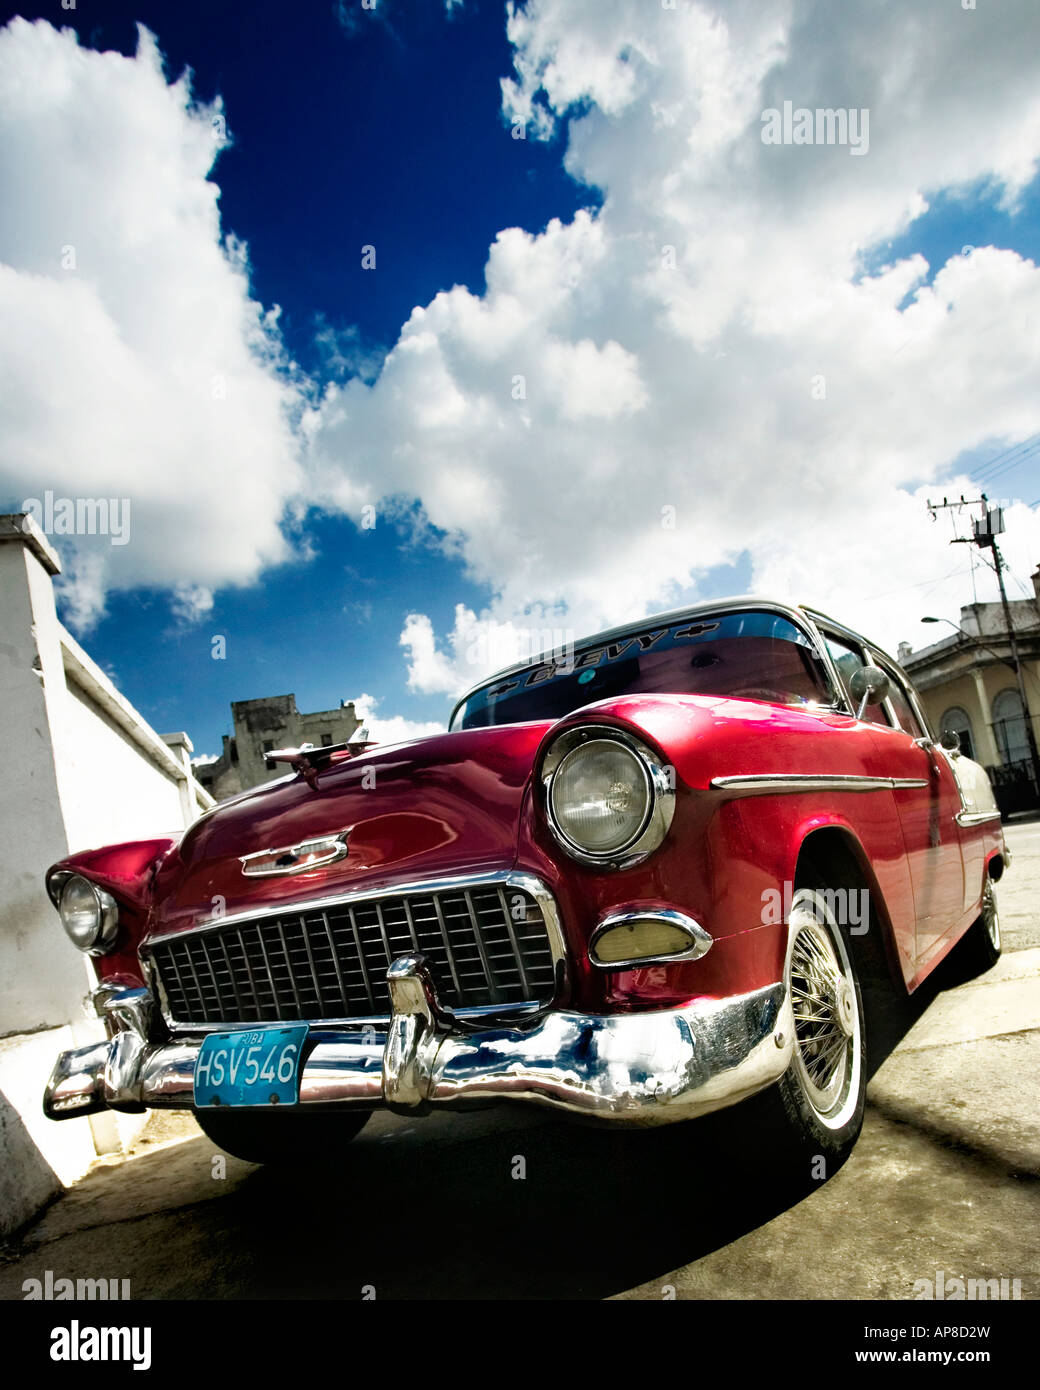 Alte amerikanische Chevy (Chevrolet) sitzt in einer Garage in Havanna (Kuba) geparkt. Amerikanische Oldtimer sind in Kuba gesehen. Stockfoto